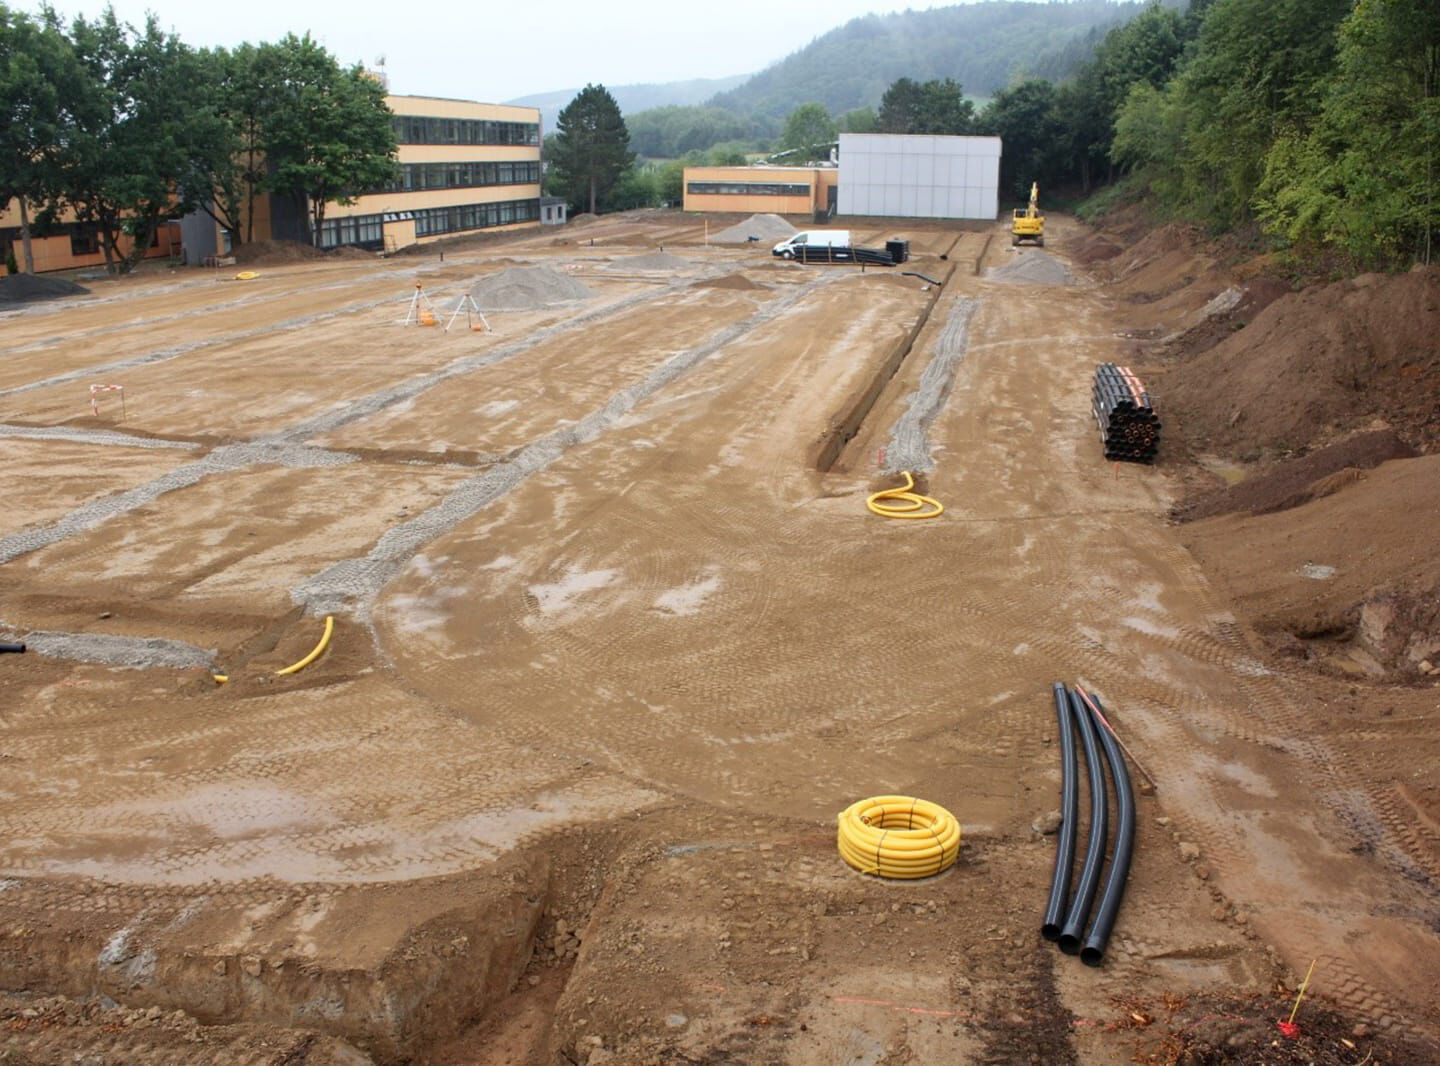 Baustelle vor einer Schule